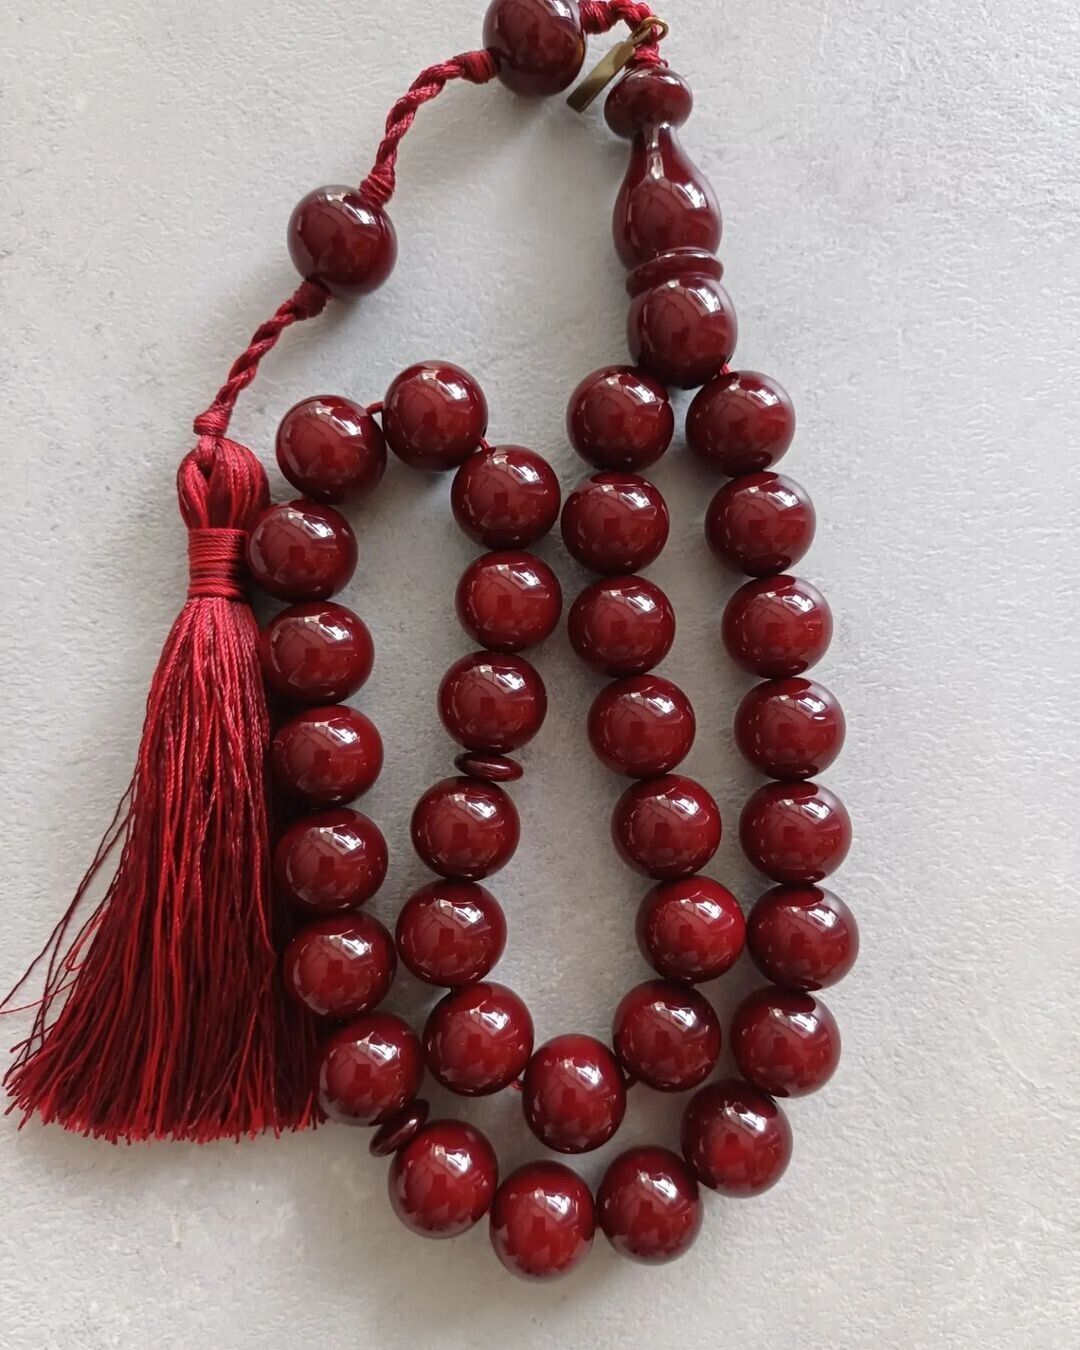  Islamic Prayer Cherry Ottoman Bakelite Amber Rosary.15x15mm.33 beads.Tasbih